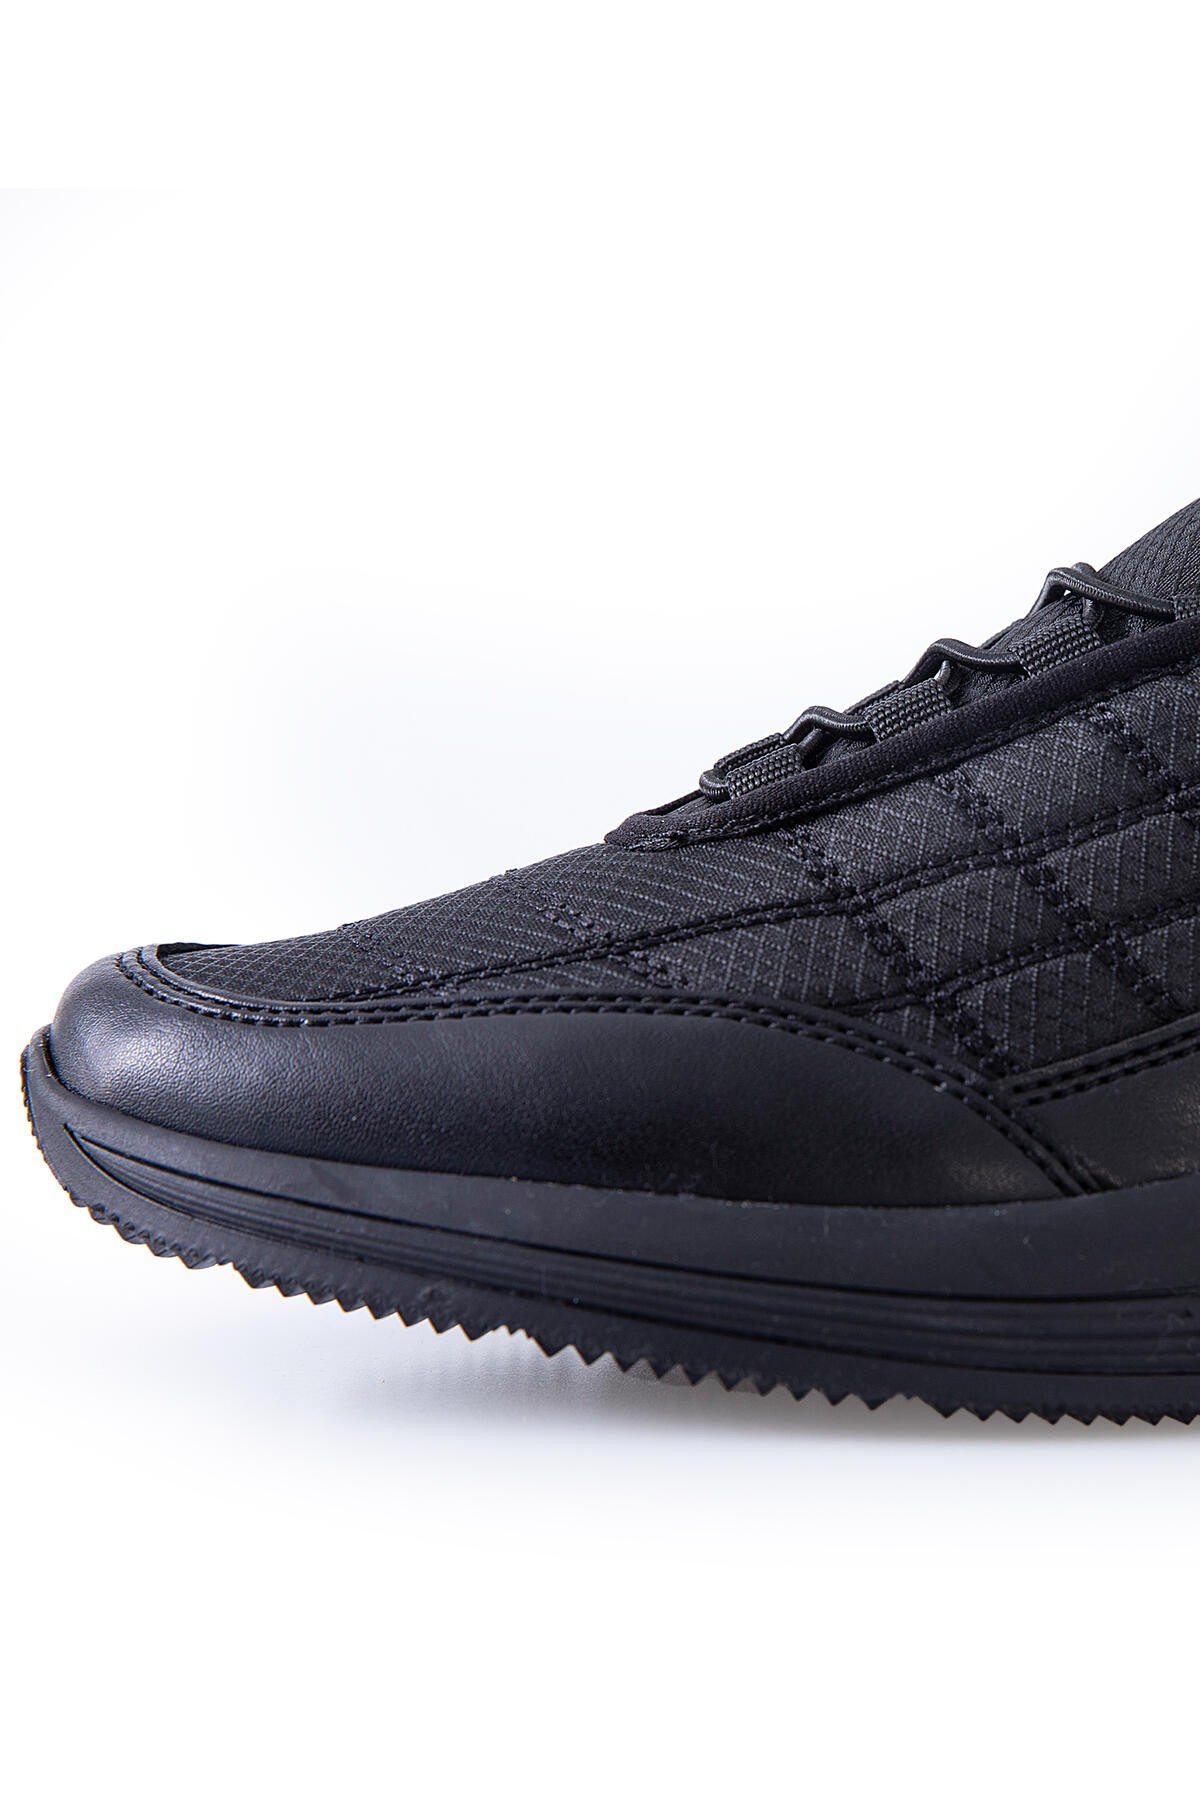 Siyah Bağcıklı Kapitone Suni Deri Detaylı Erkek Spor Ayakkabı - 89096